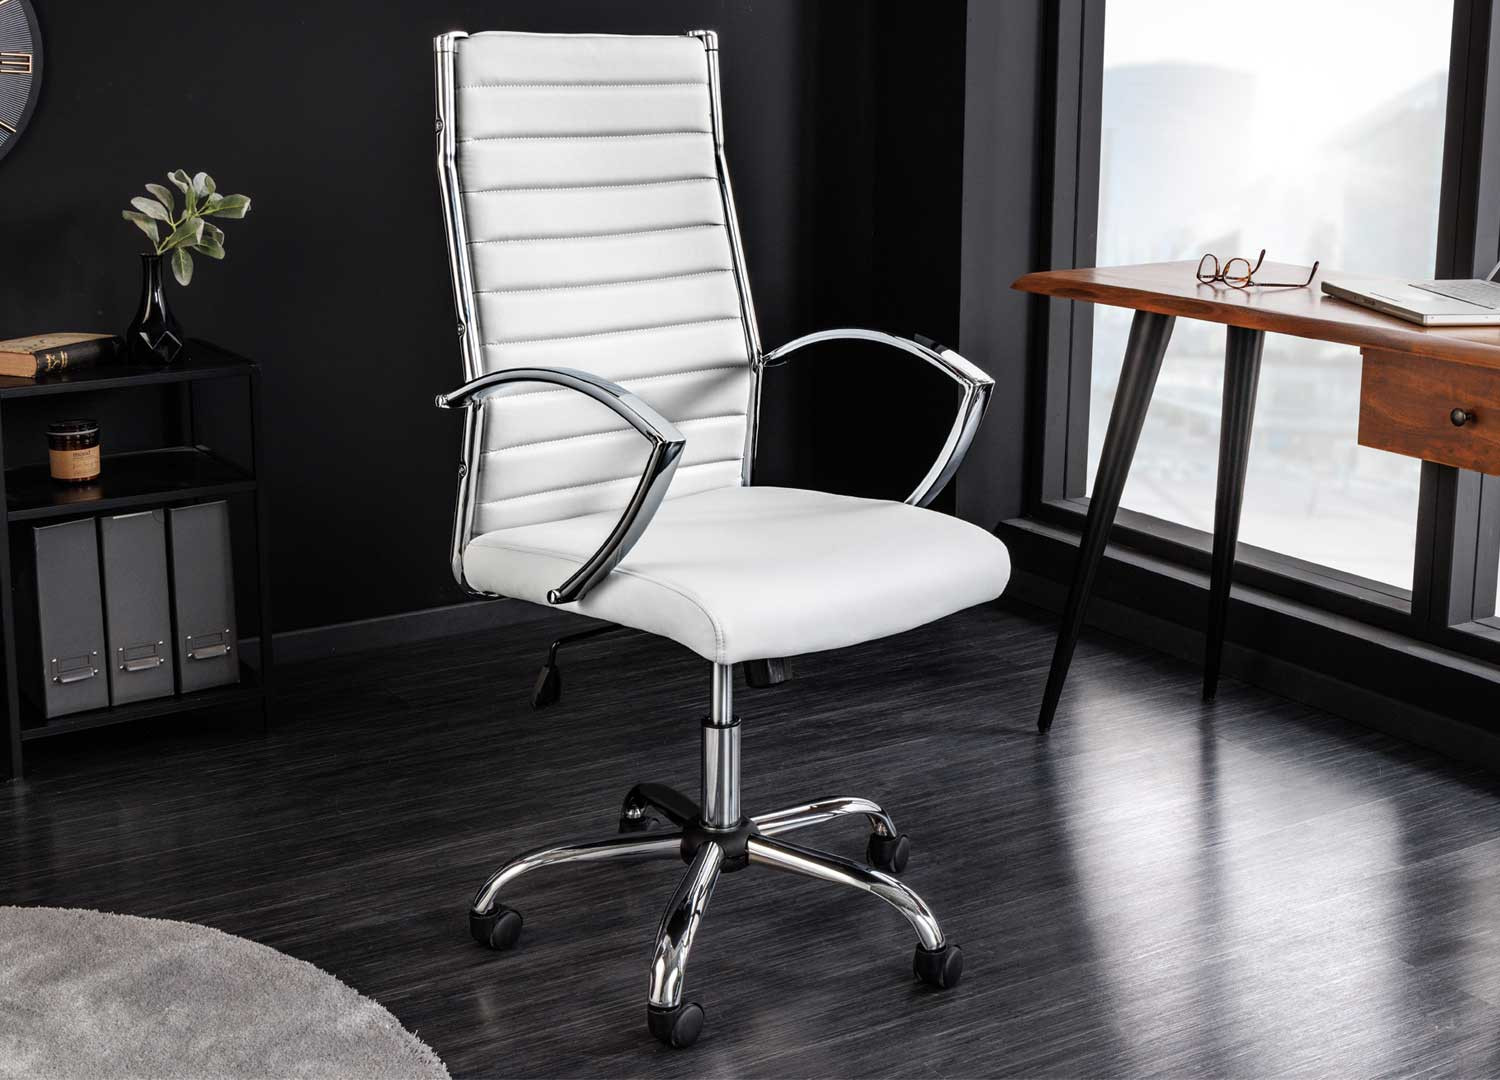 Chaise de bureau Simili Cuir Blanc CONCORDE - Univers du Bureau Couleur  Blanc Matière Simili cuir Couleur secondaire Blanc